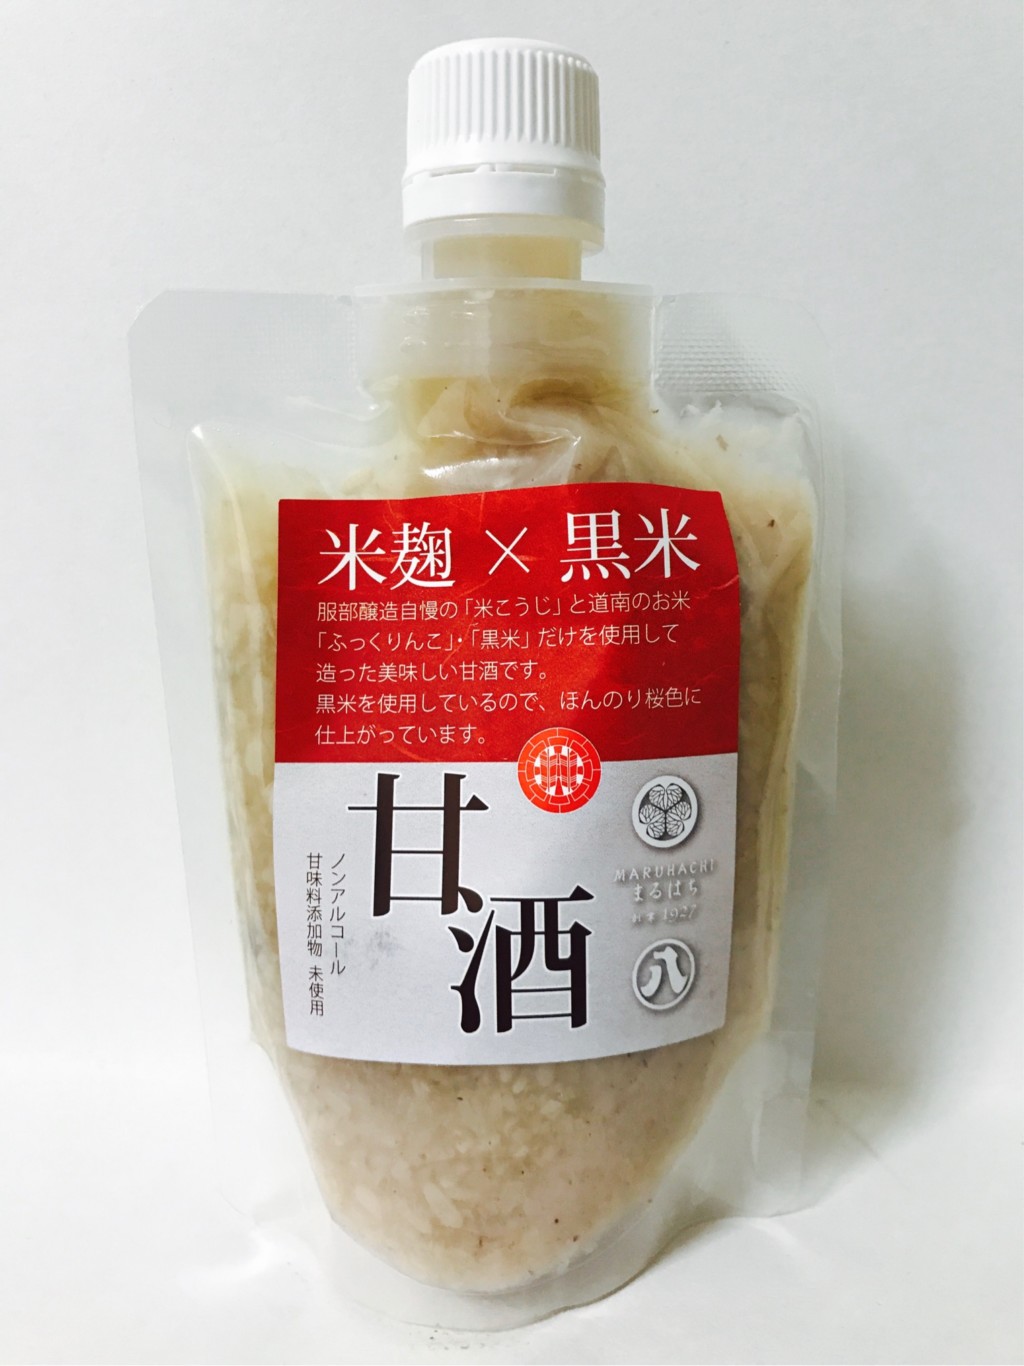 服部醸造の黒米を用いた米麹甘酒『米麹×黒米甘酒(さくらあまざけ)』